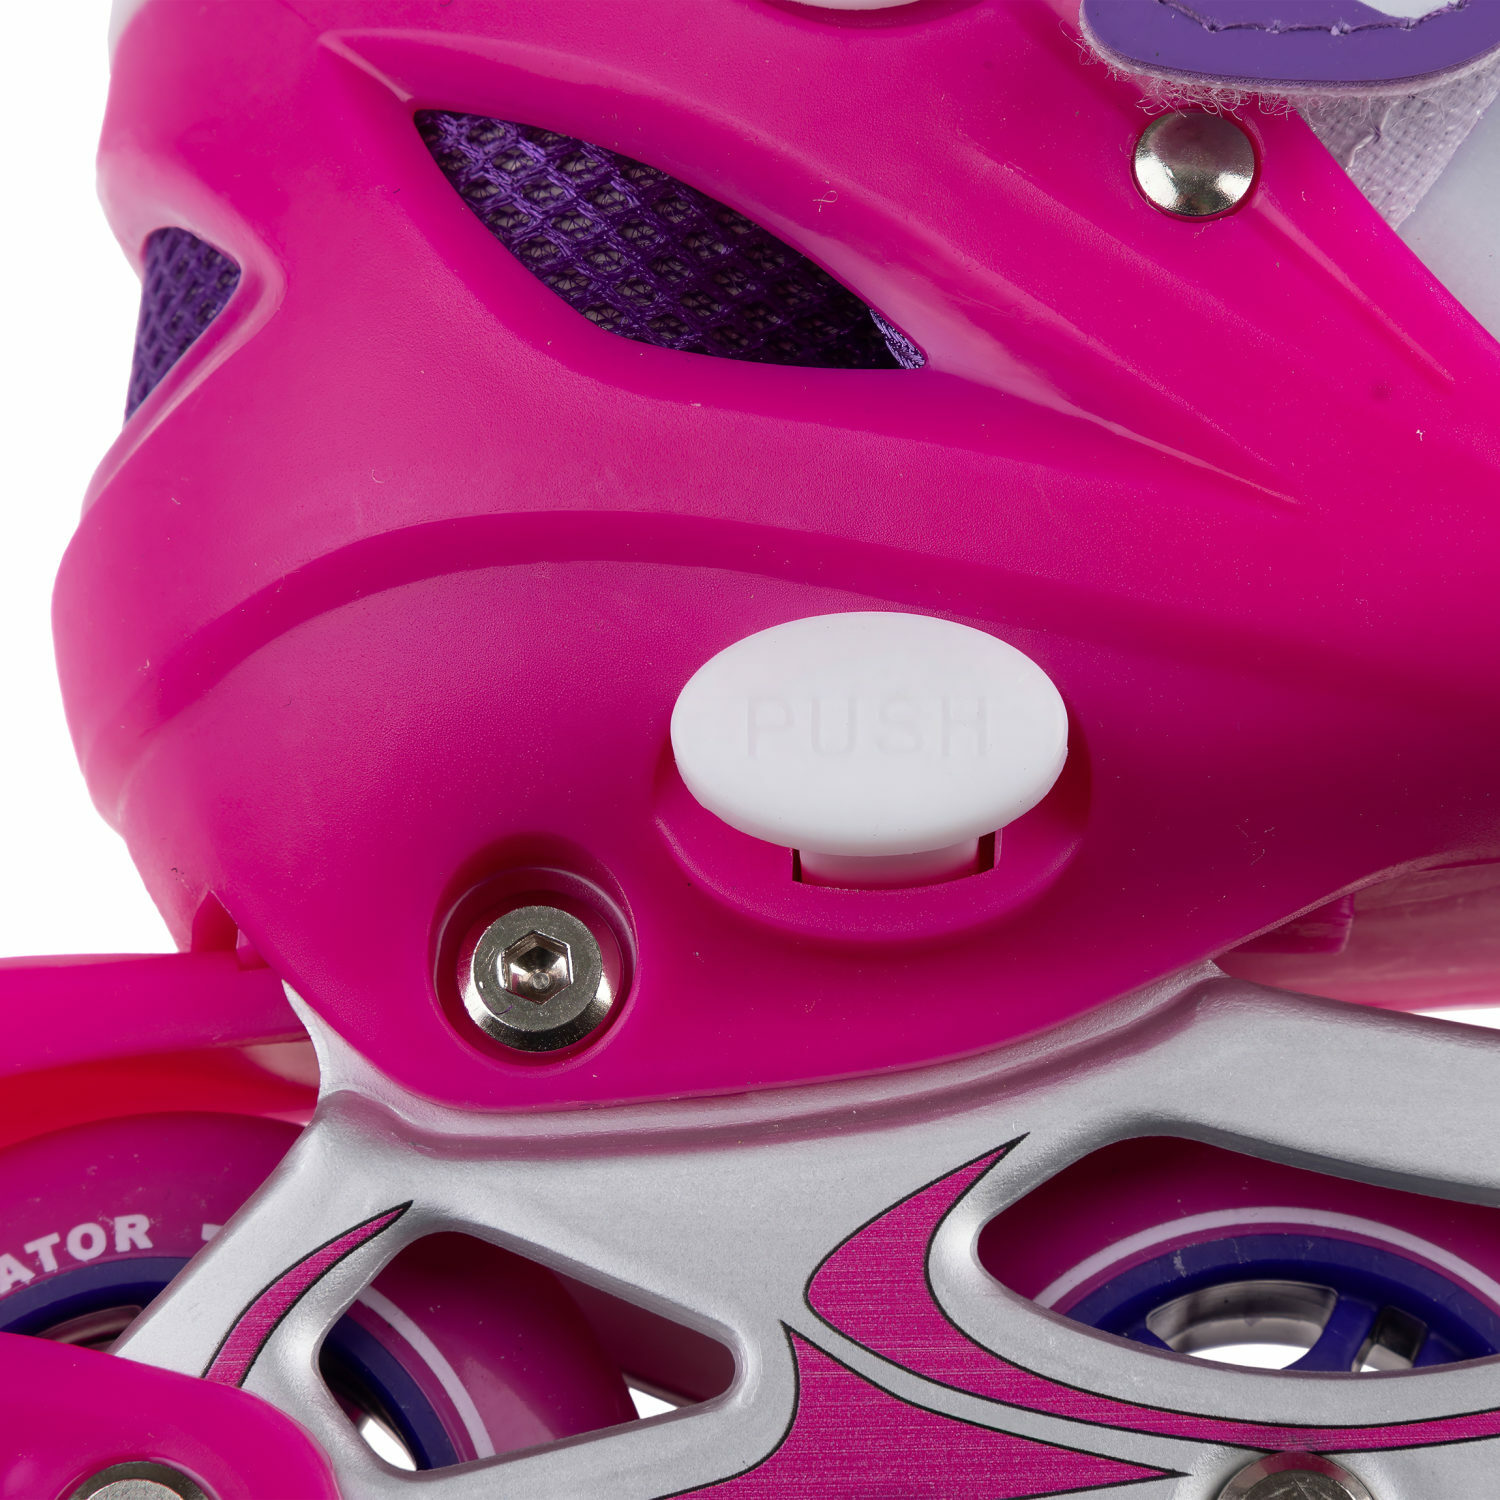 Ролики Navigator детские раздвижные 34 - 37 размер с защитой и шлемом розовый - фото 8